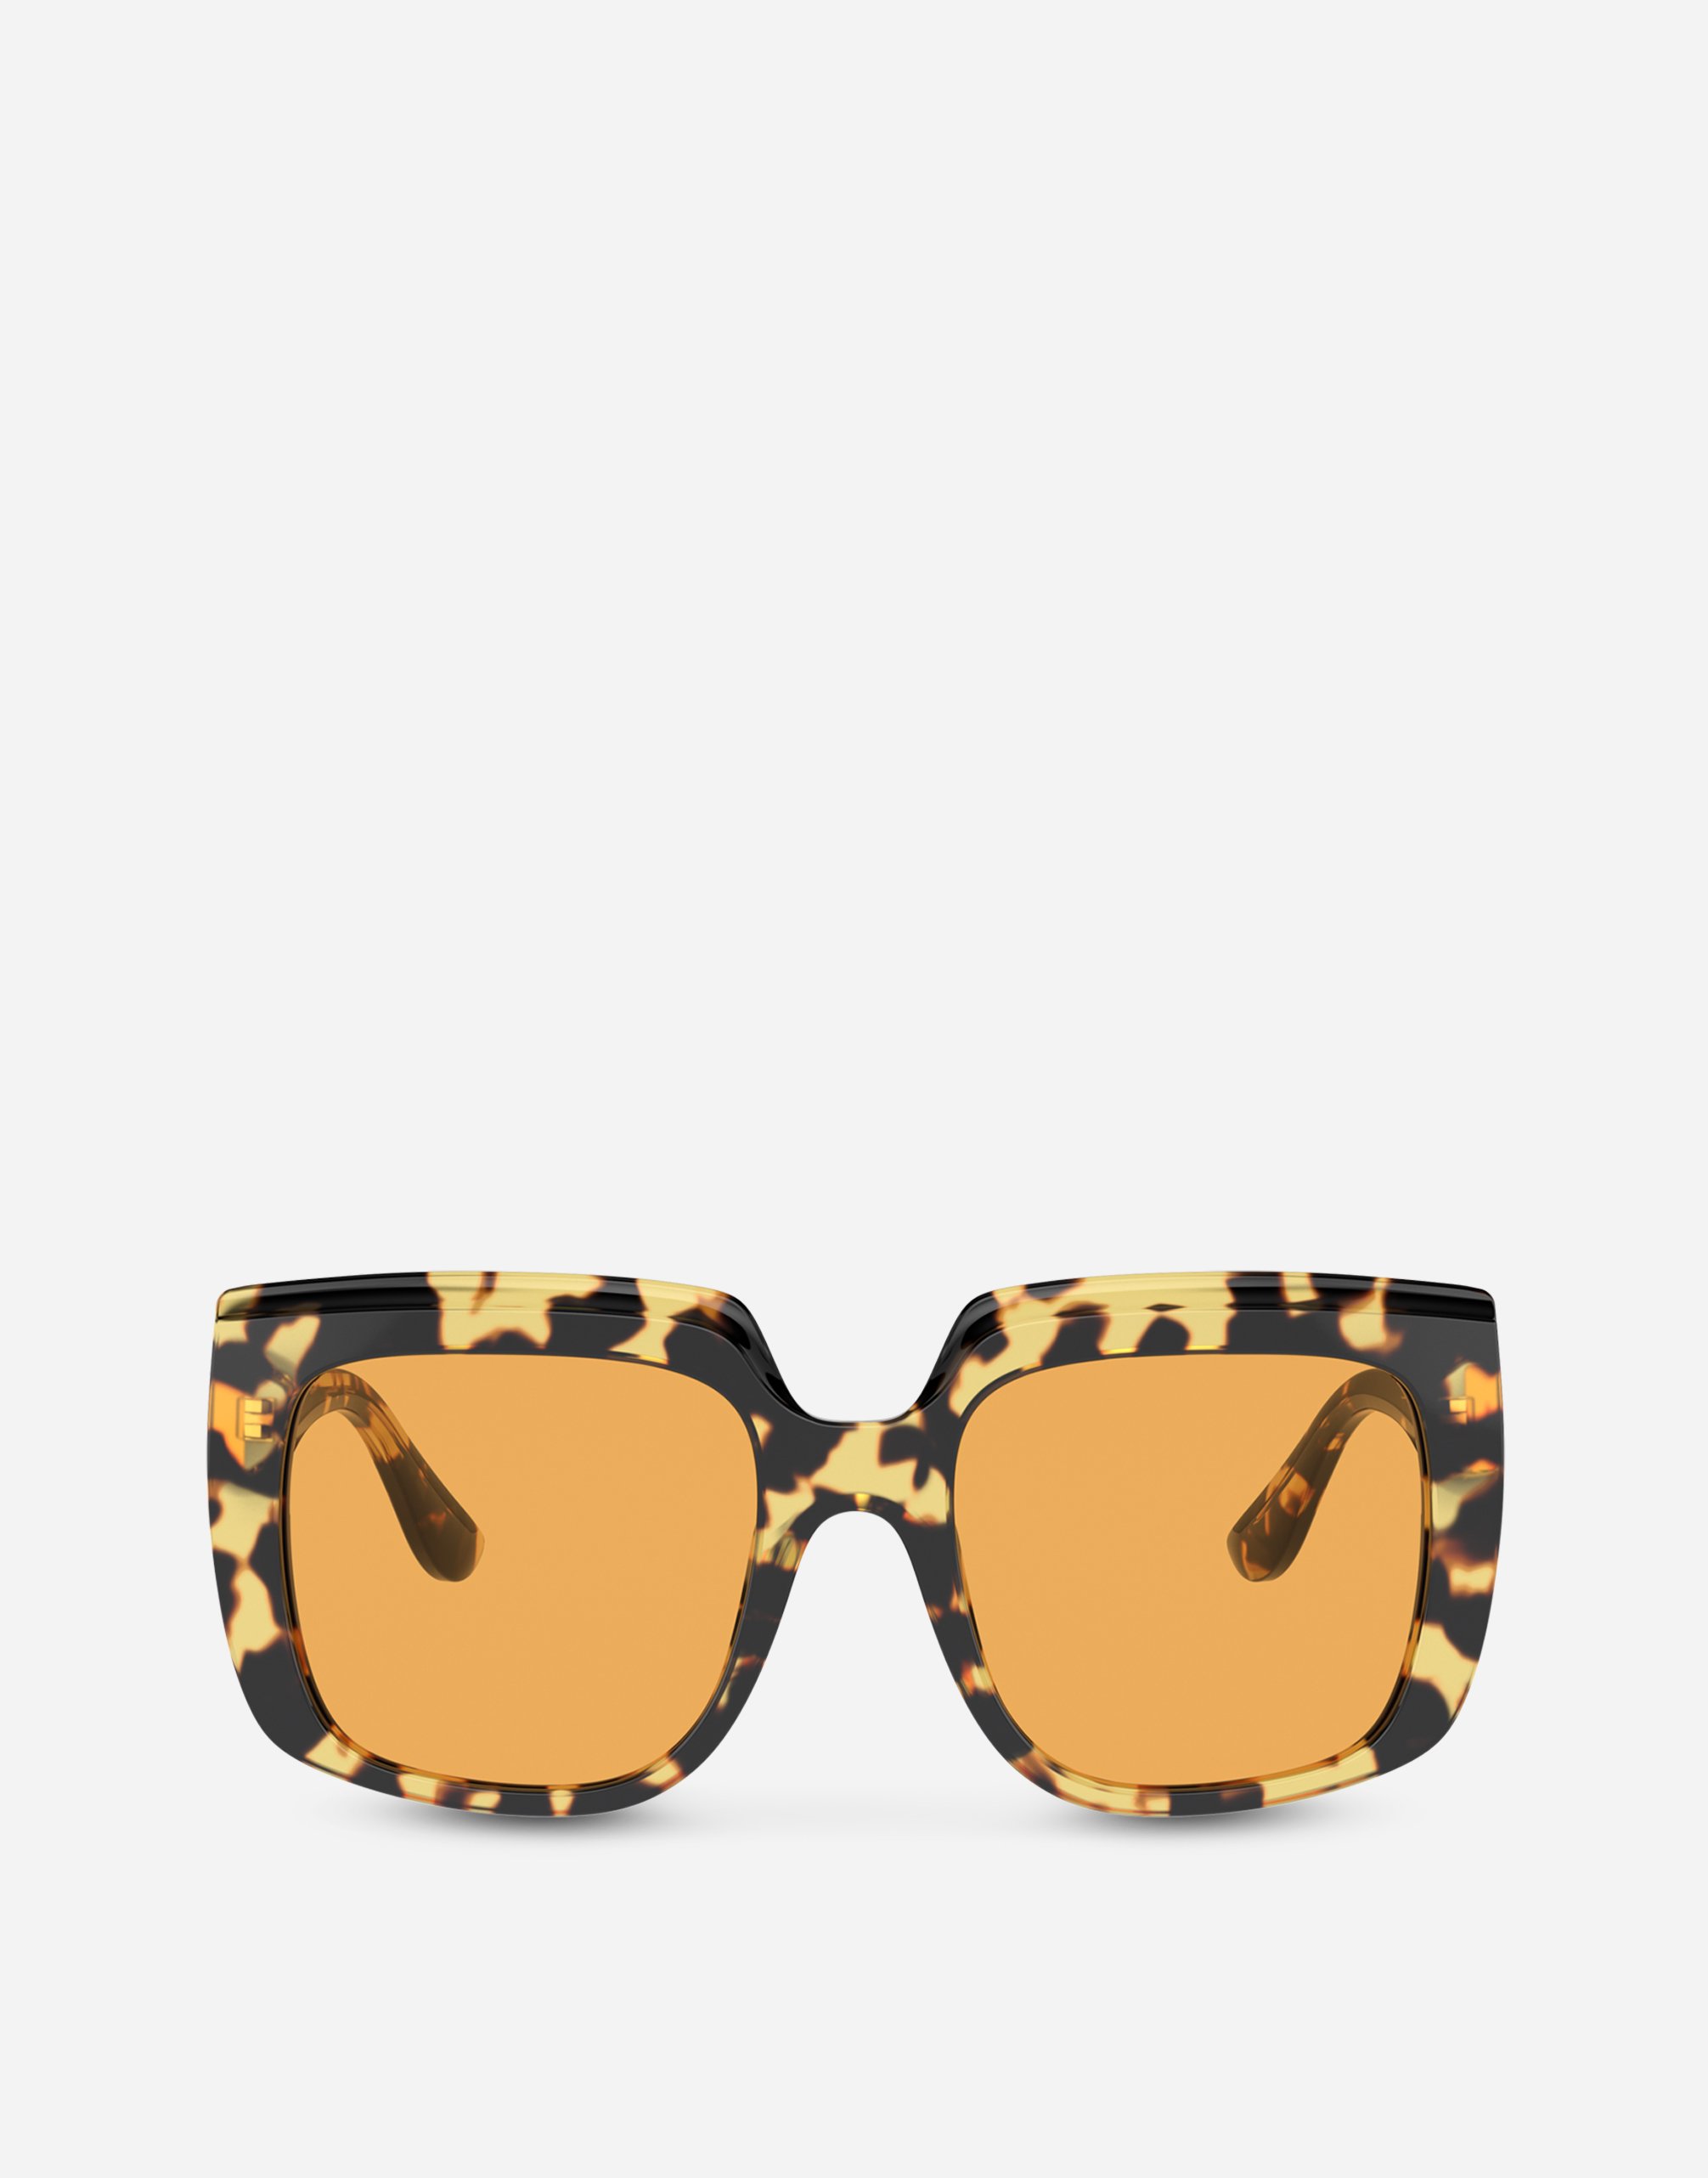 Capri sunglasses in Yellow havana